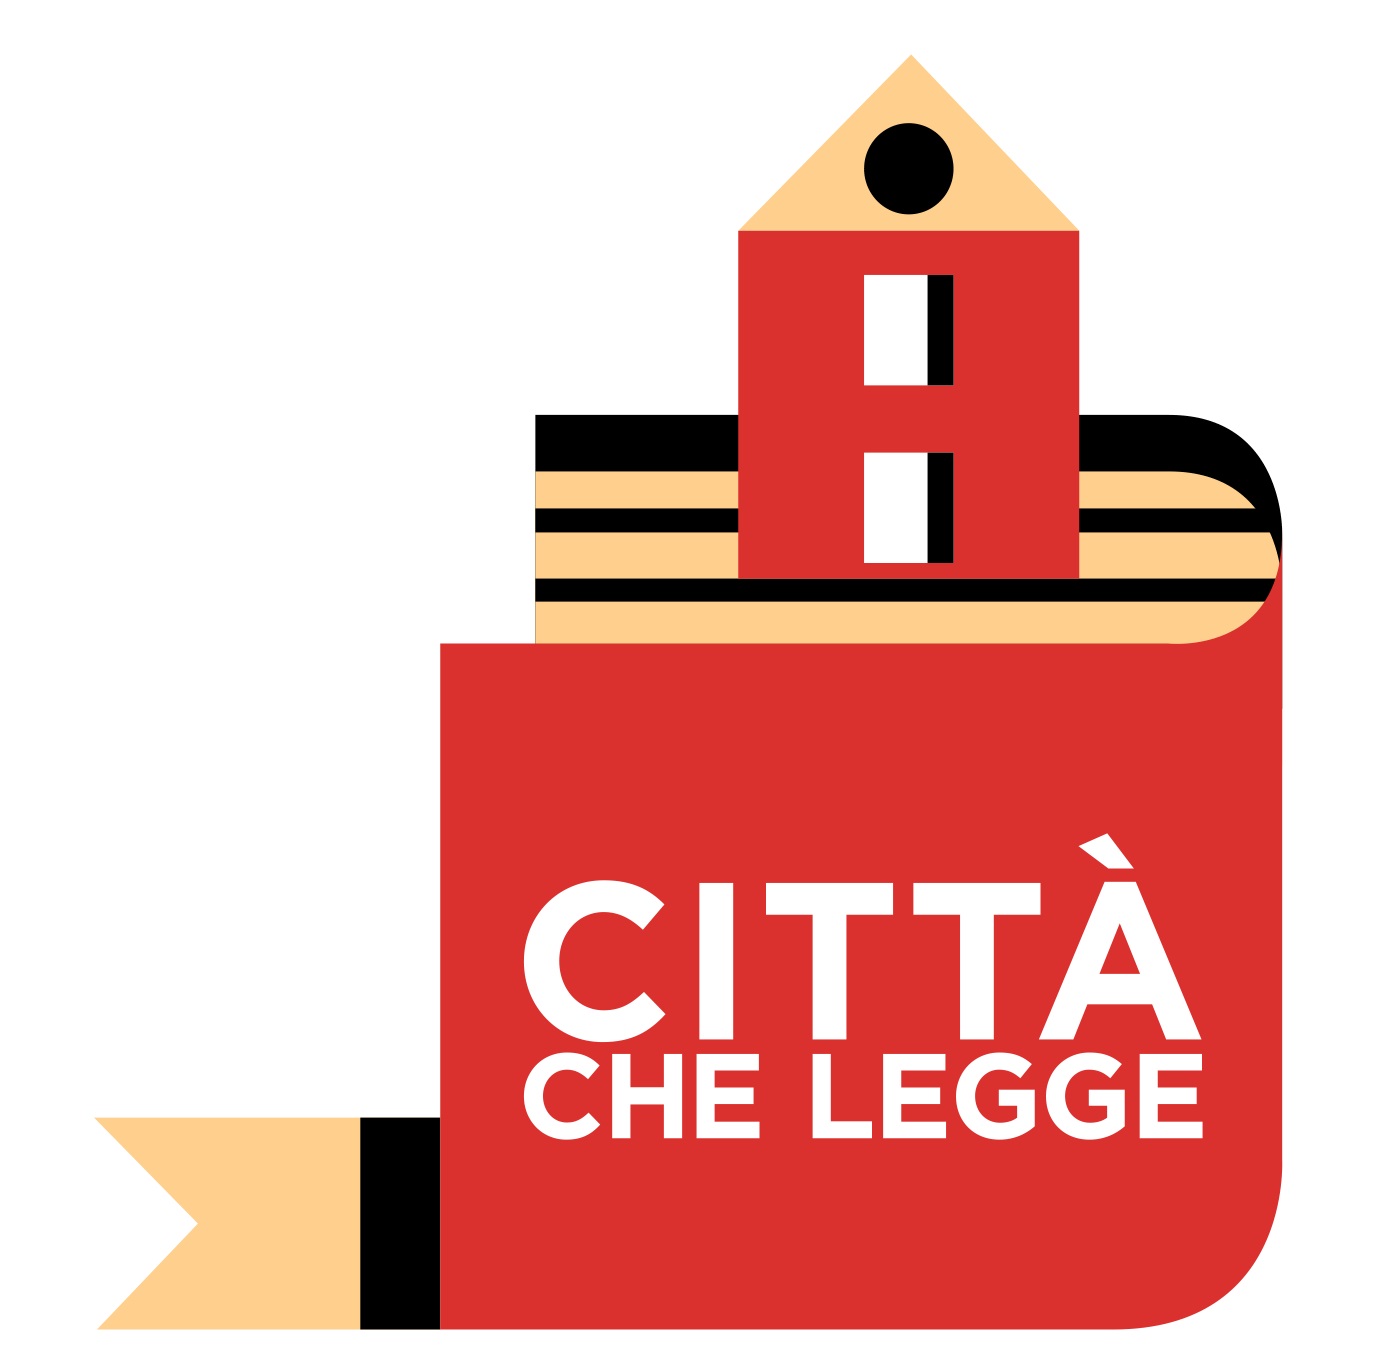 SULMONA - CITTA' CHE LEGGE - PATTO PER LA LETTURA